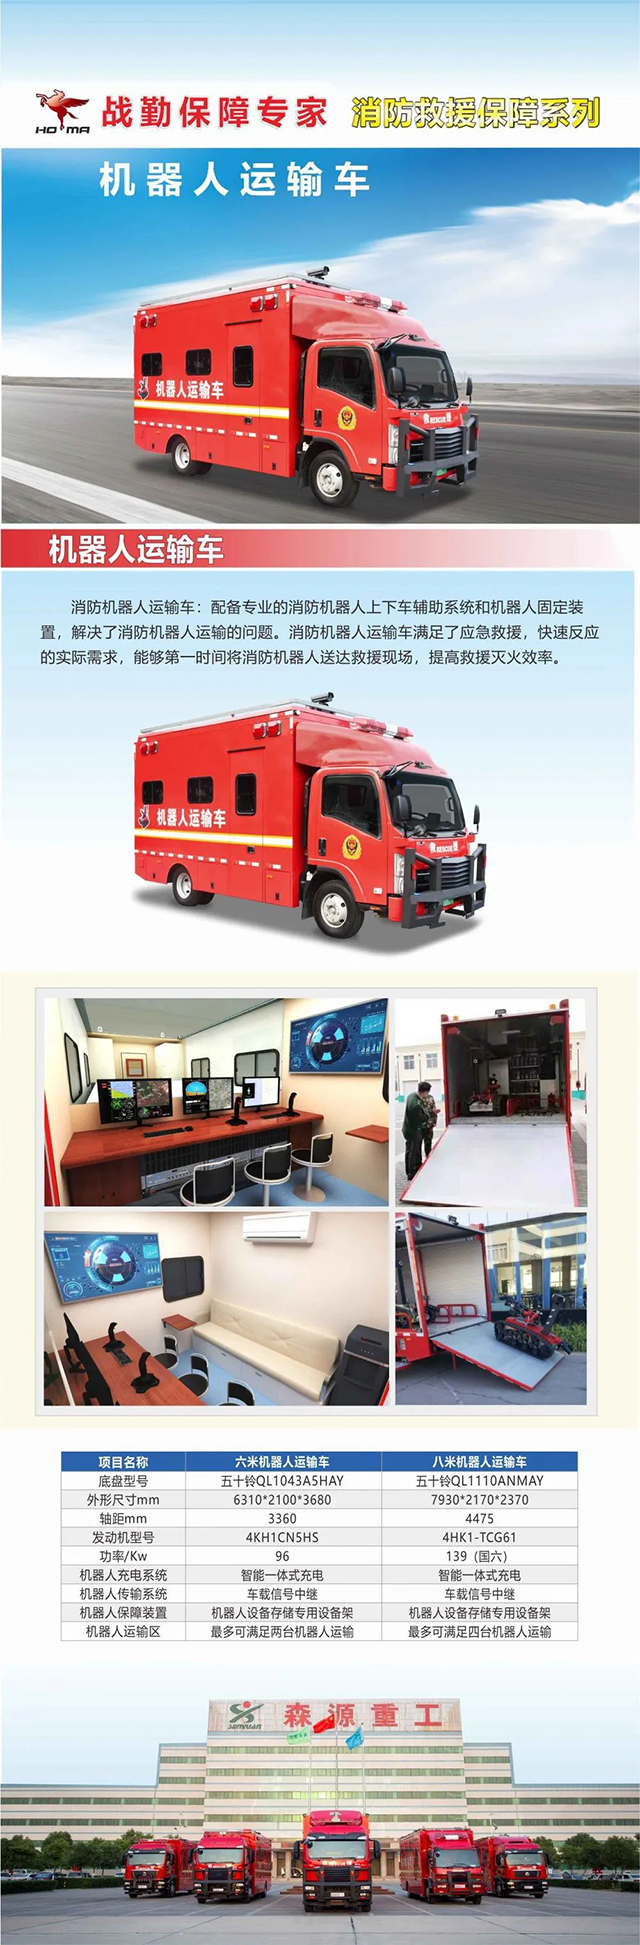 [精品推荐]消防救援保障系列— —机器人运输车(组图)